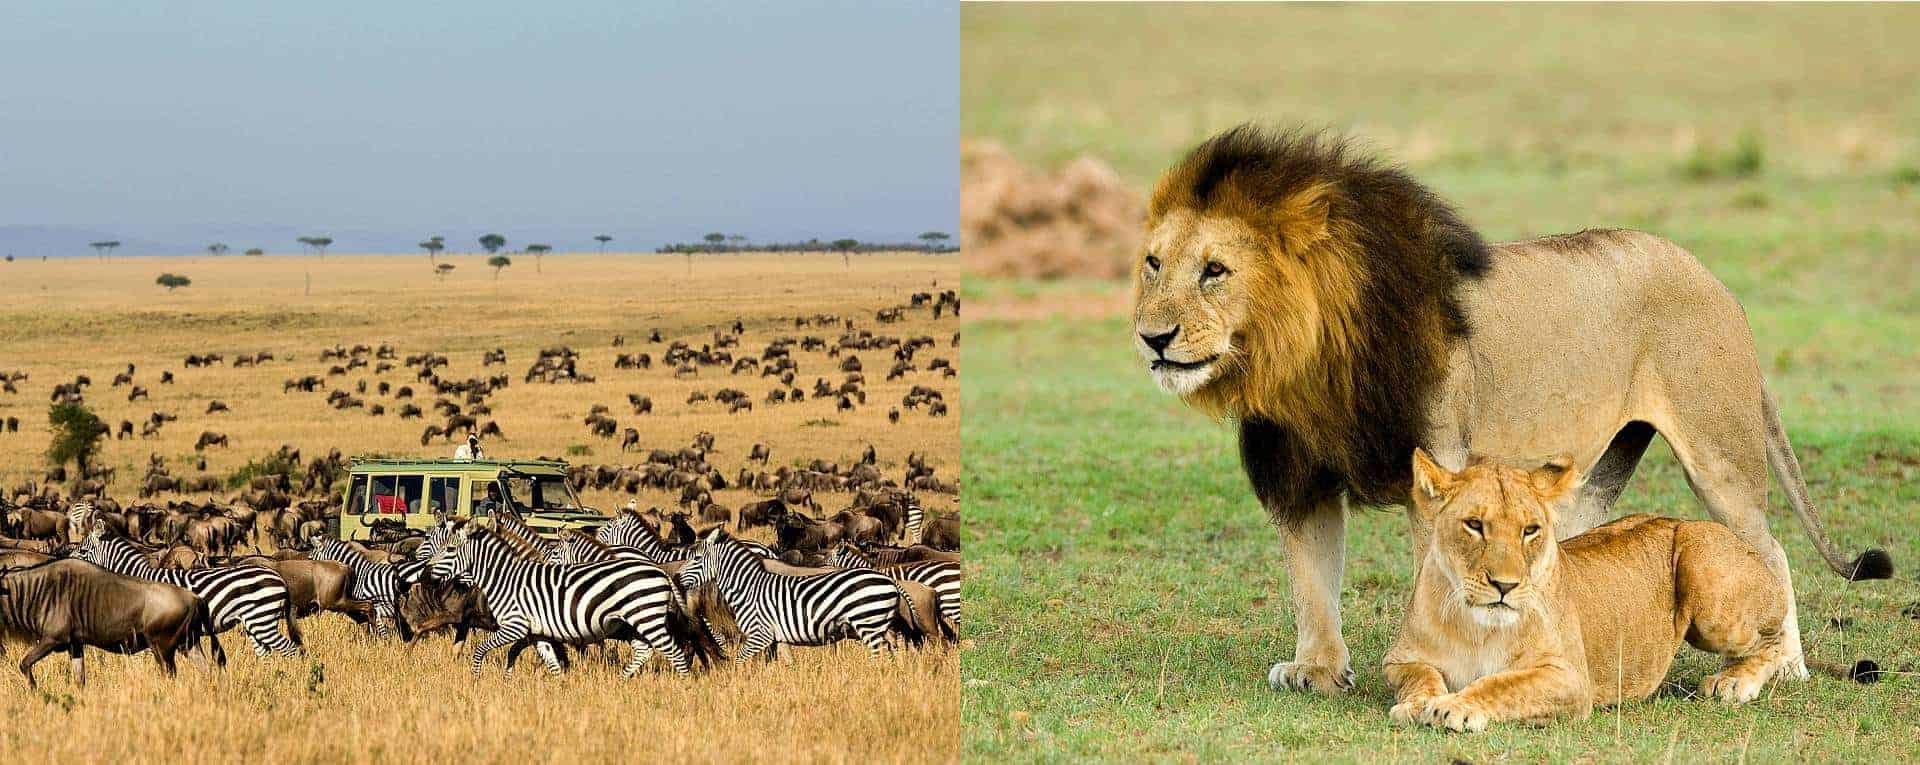 Serengeti National Park or Kruger National Park